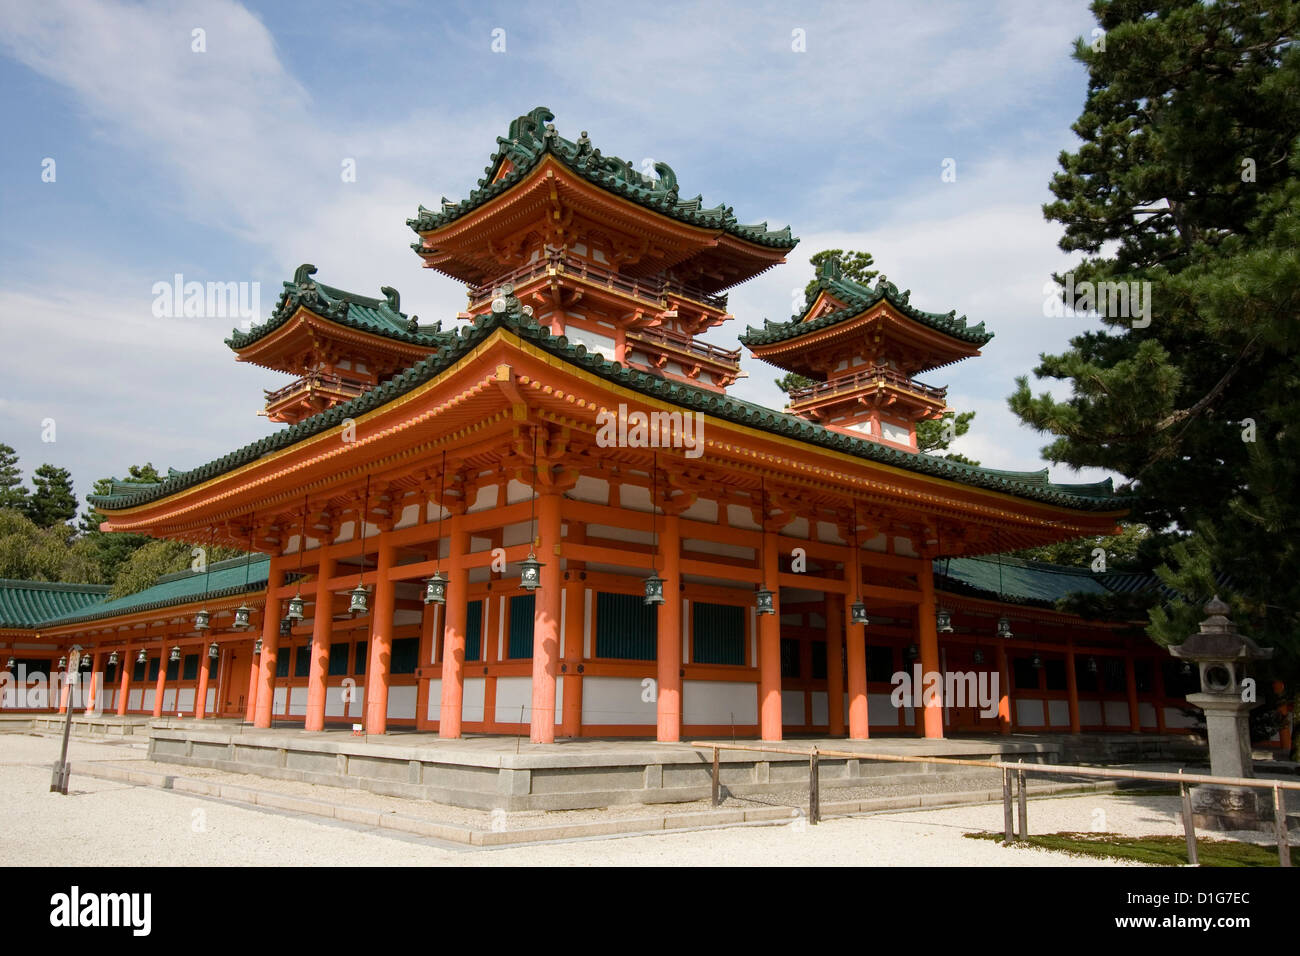 The UNESCO Ancient Shinto Shimogamo Shrine (also known as Shimogamo-jinja) in Kyoto, Japan. Stock Photo